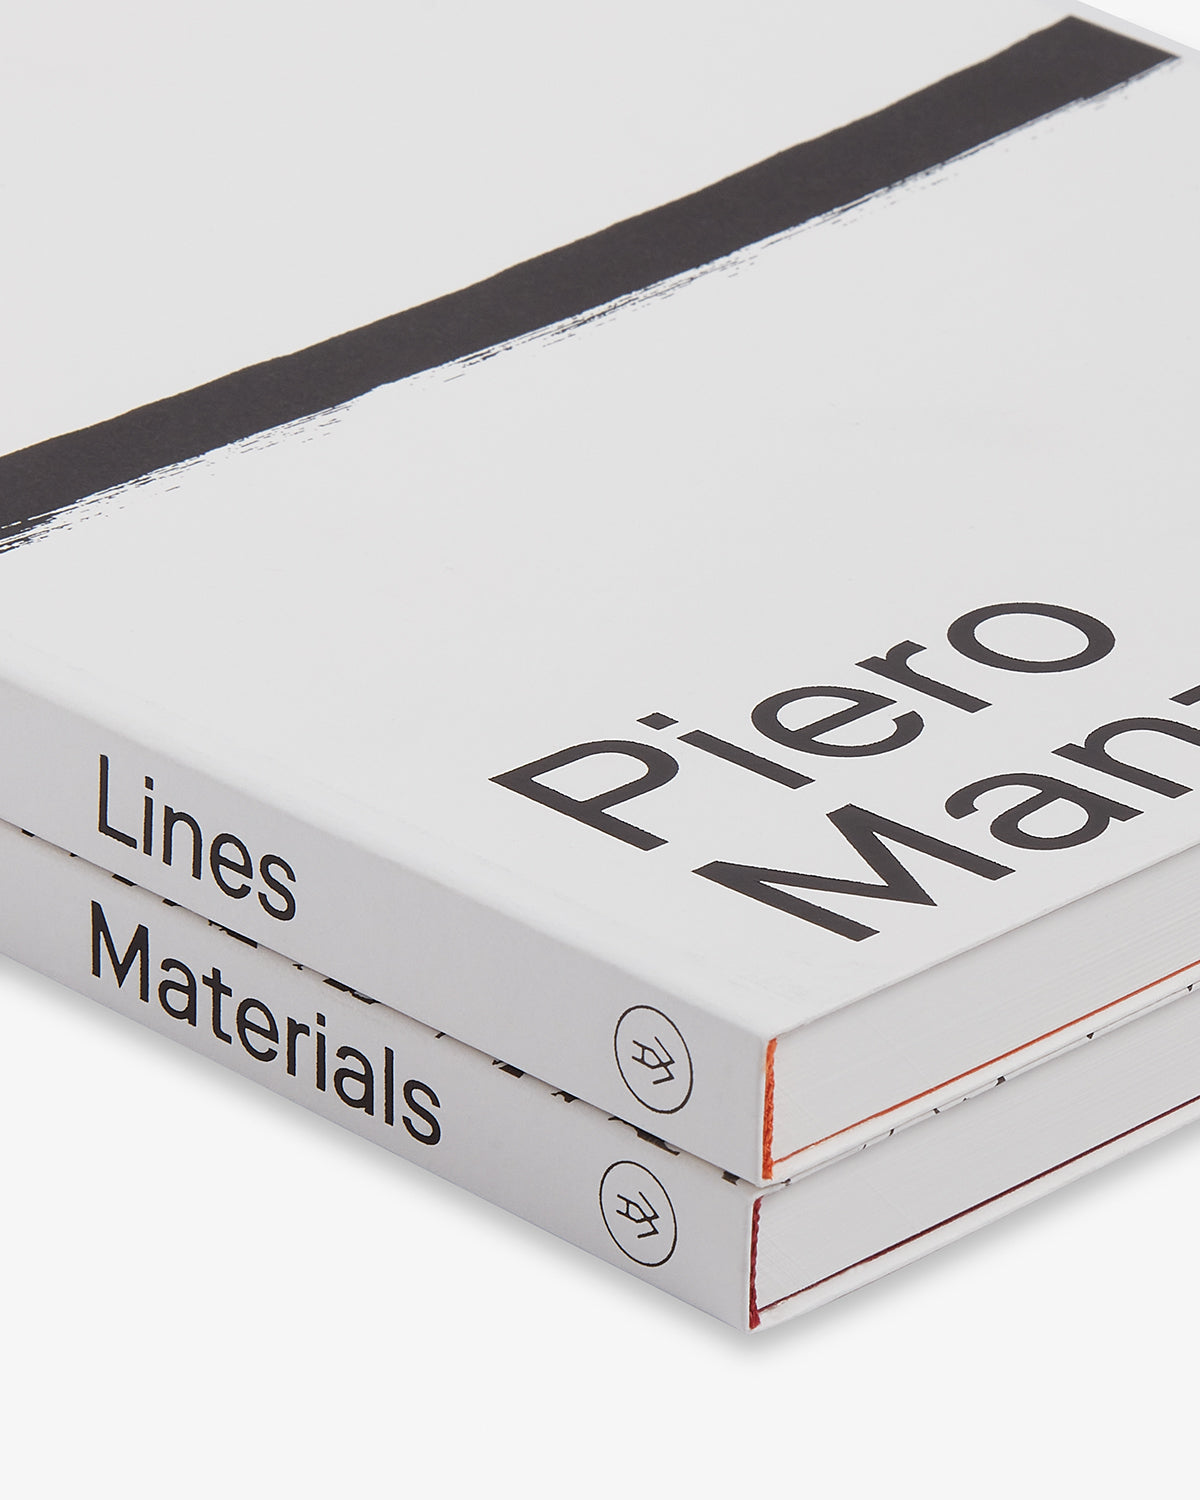 Piero Manzoni: Materials & Lines